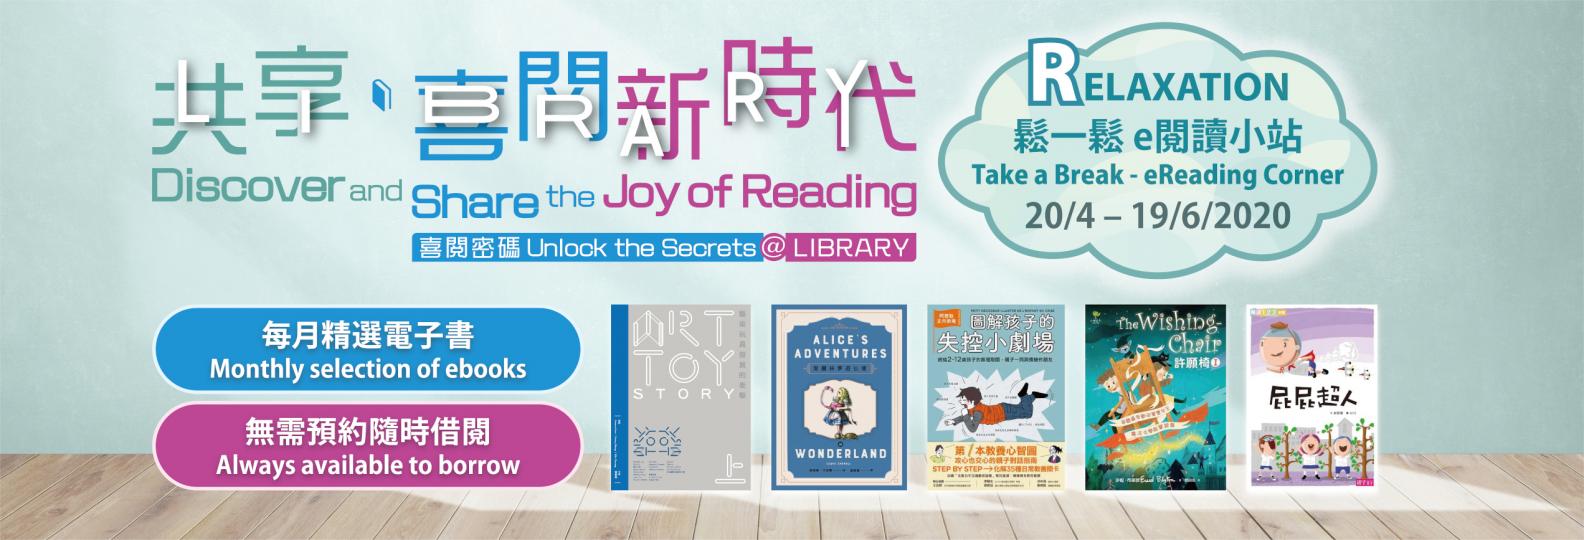 香港公共圖書館精選電子書